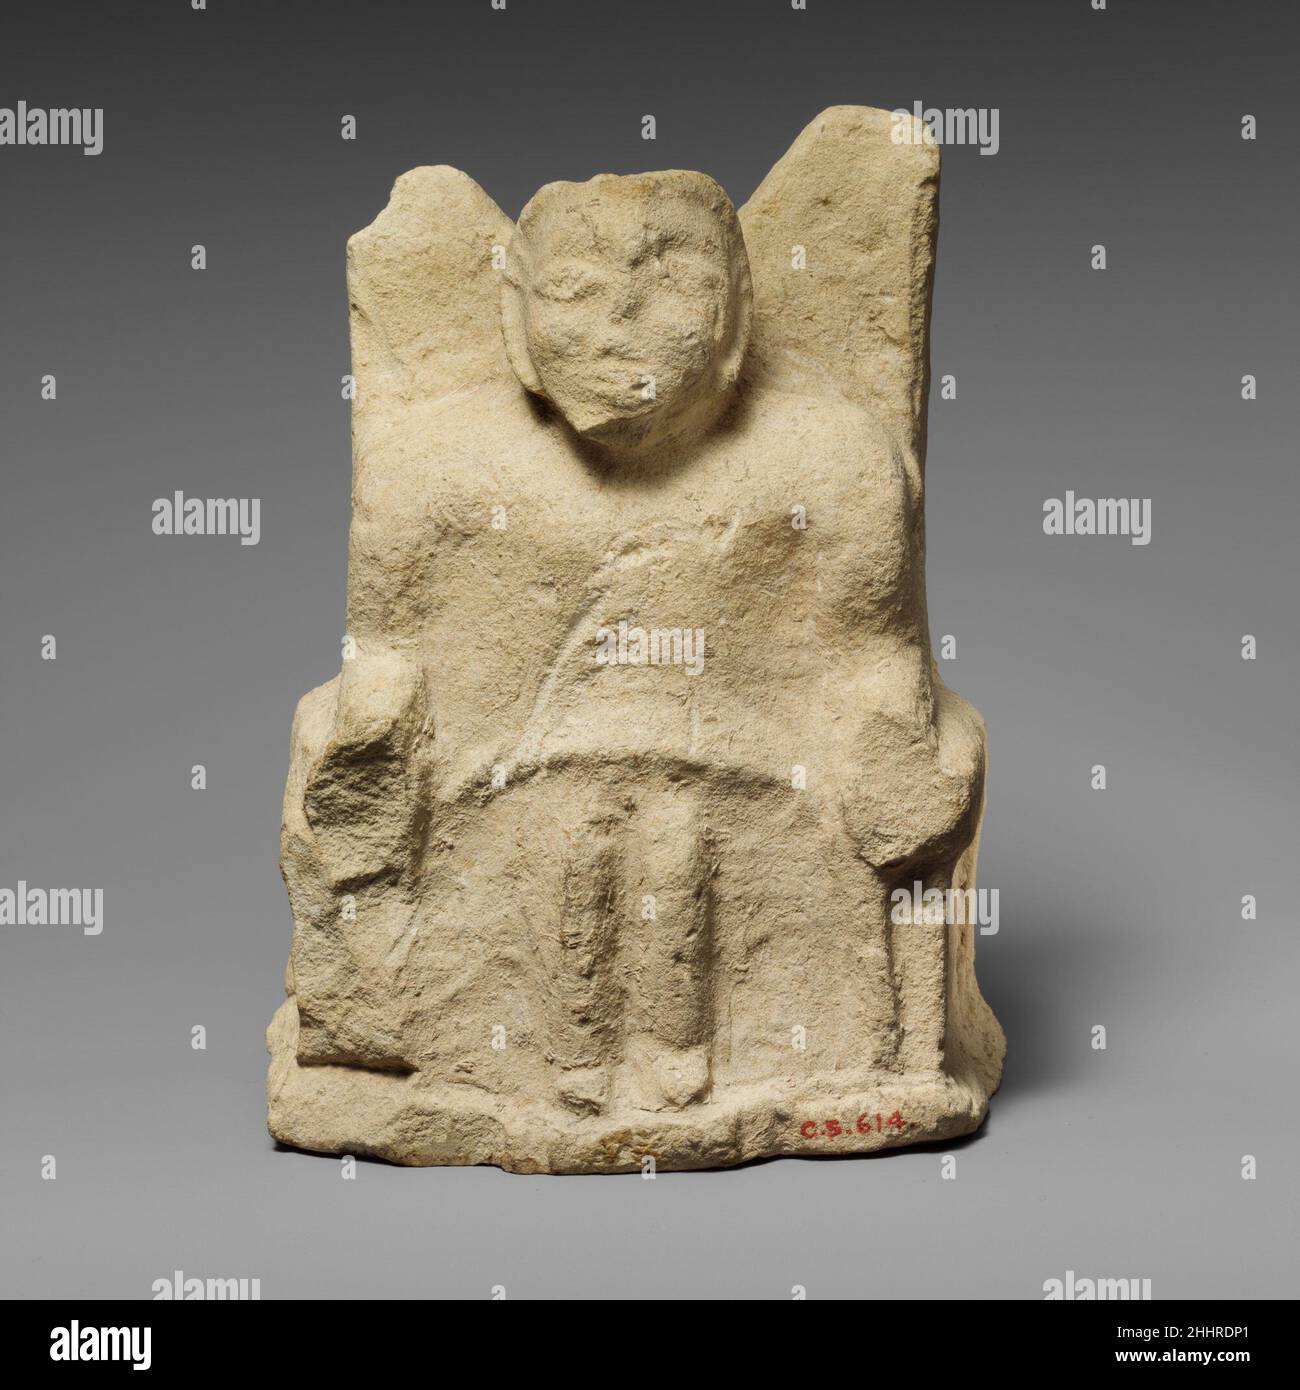 Statuetta di pietra calcarea di un Zeus Ammon seduto 4th secolo a.C. Figura cipriota con corna di ariete, seduto su trono alto-sostenuto, le braccia formate da arieti. Statuetta calcarea di Zeus Ammon seduto 242224 Foto Stock